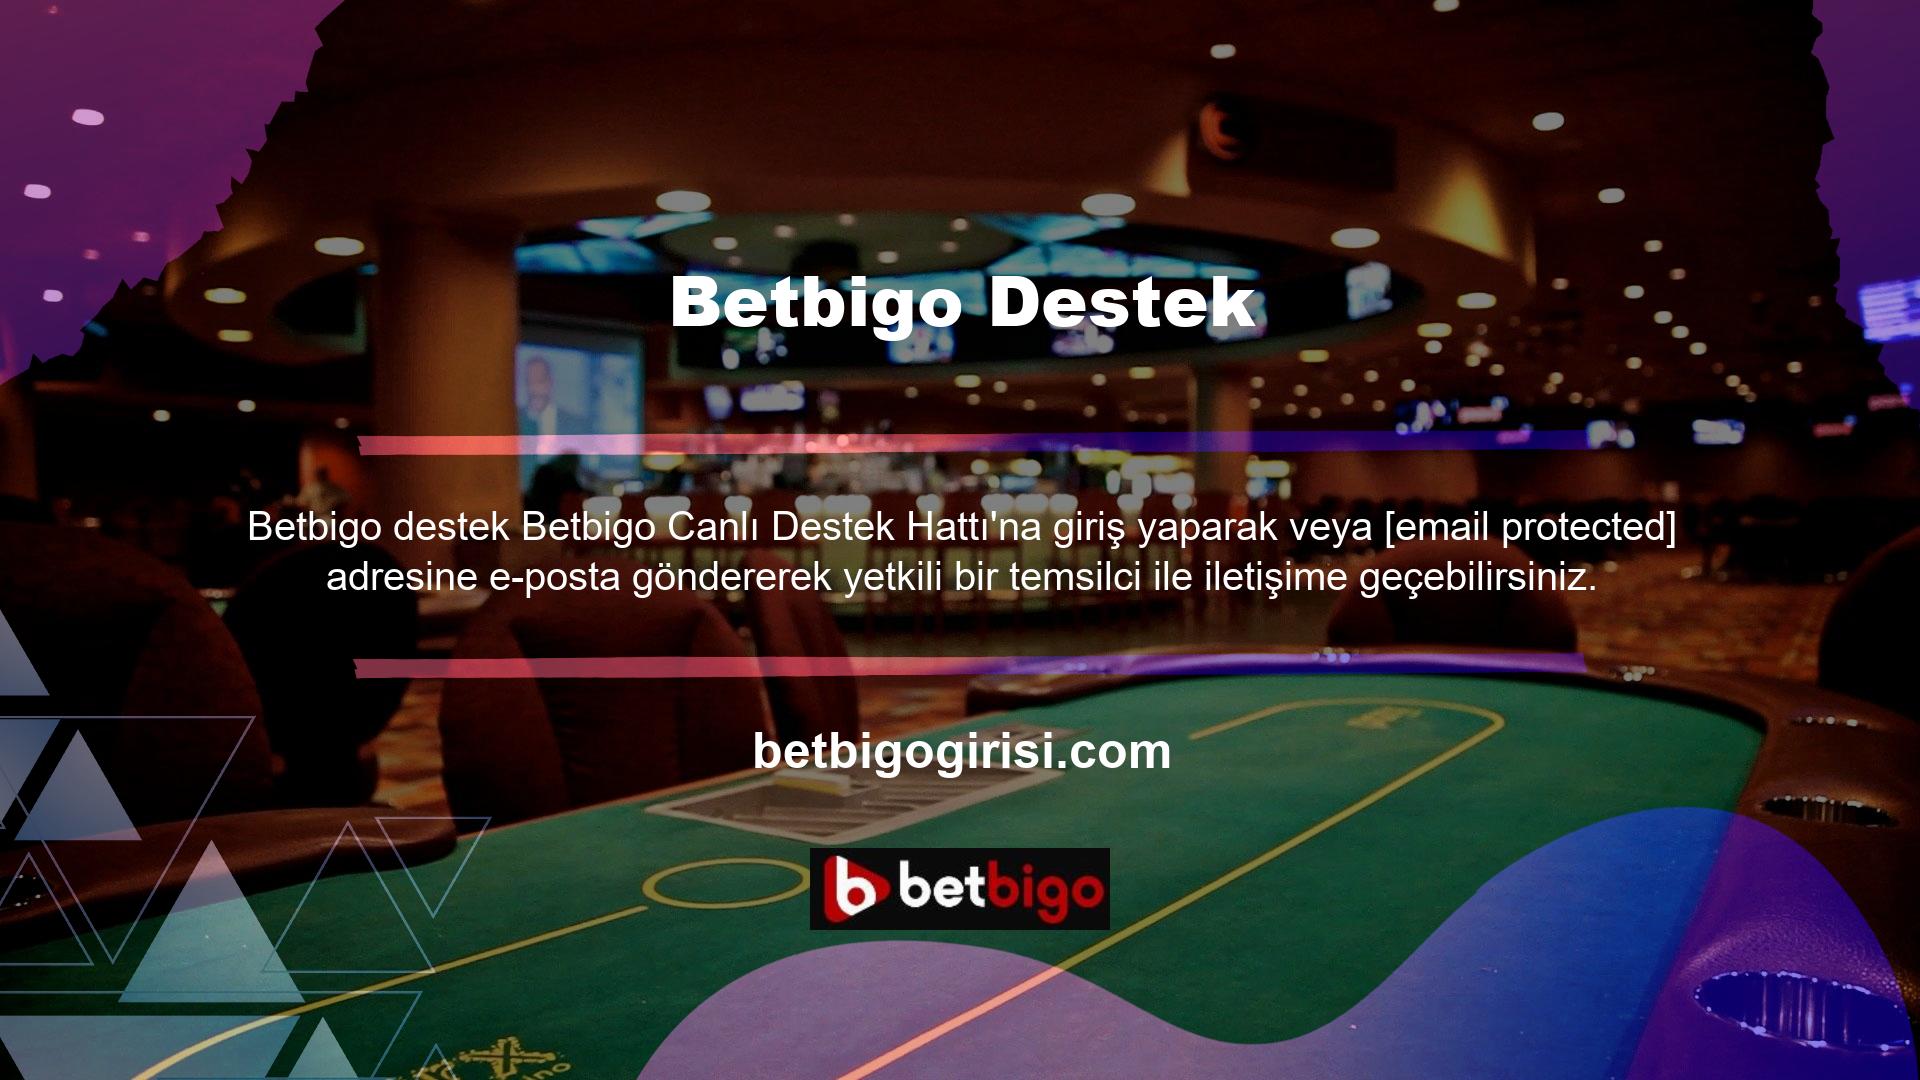 Betbigo, adres değiştiren ve yeni bir giriş adresi ile çevrimiçi olan casino sitelerinden biridir, bu nedenle giriş sorunları yaşayabilirsiniz